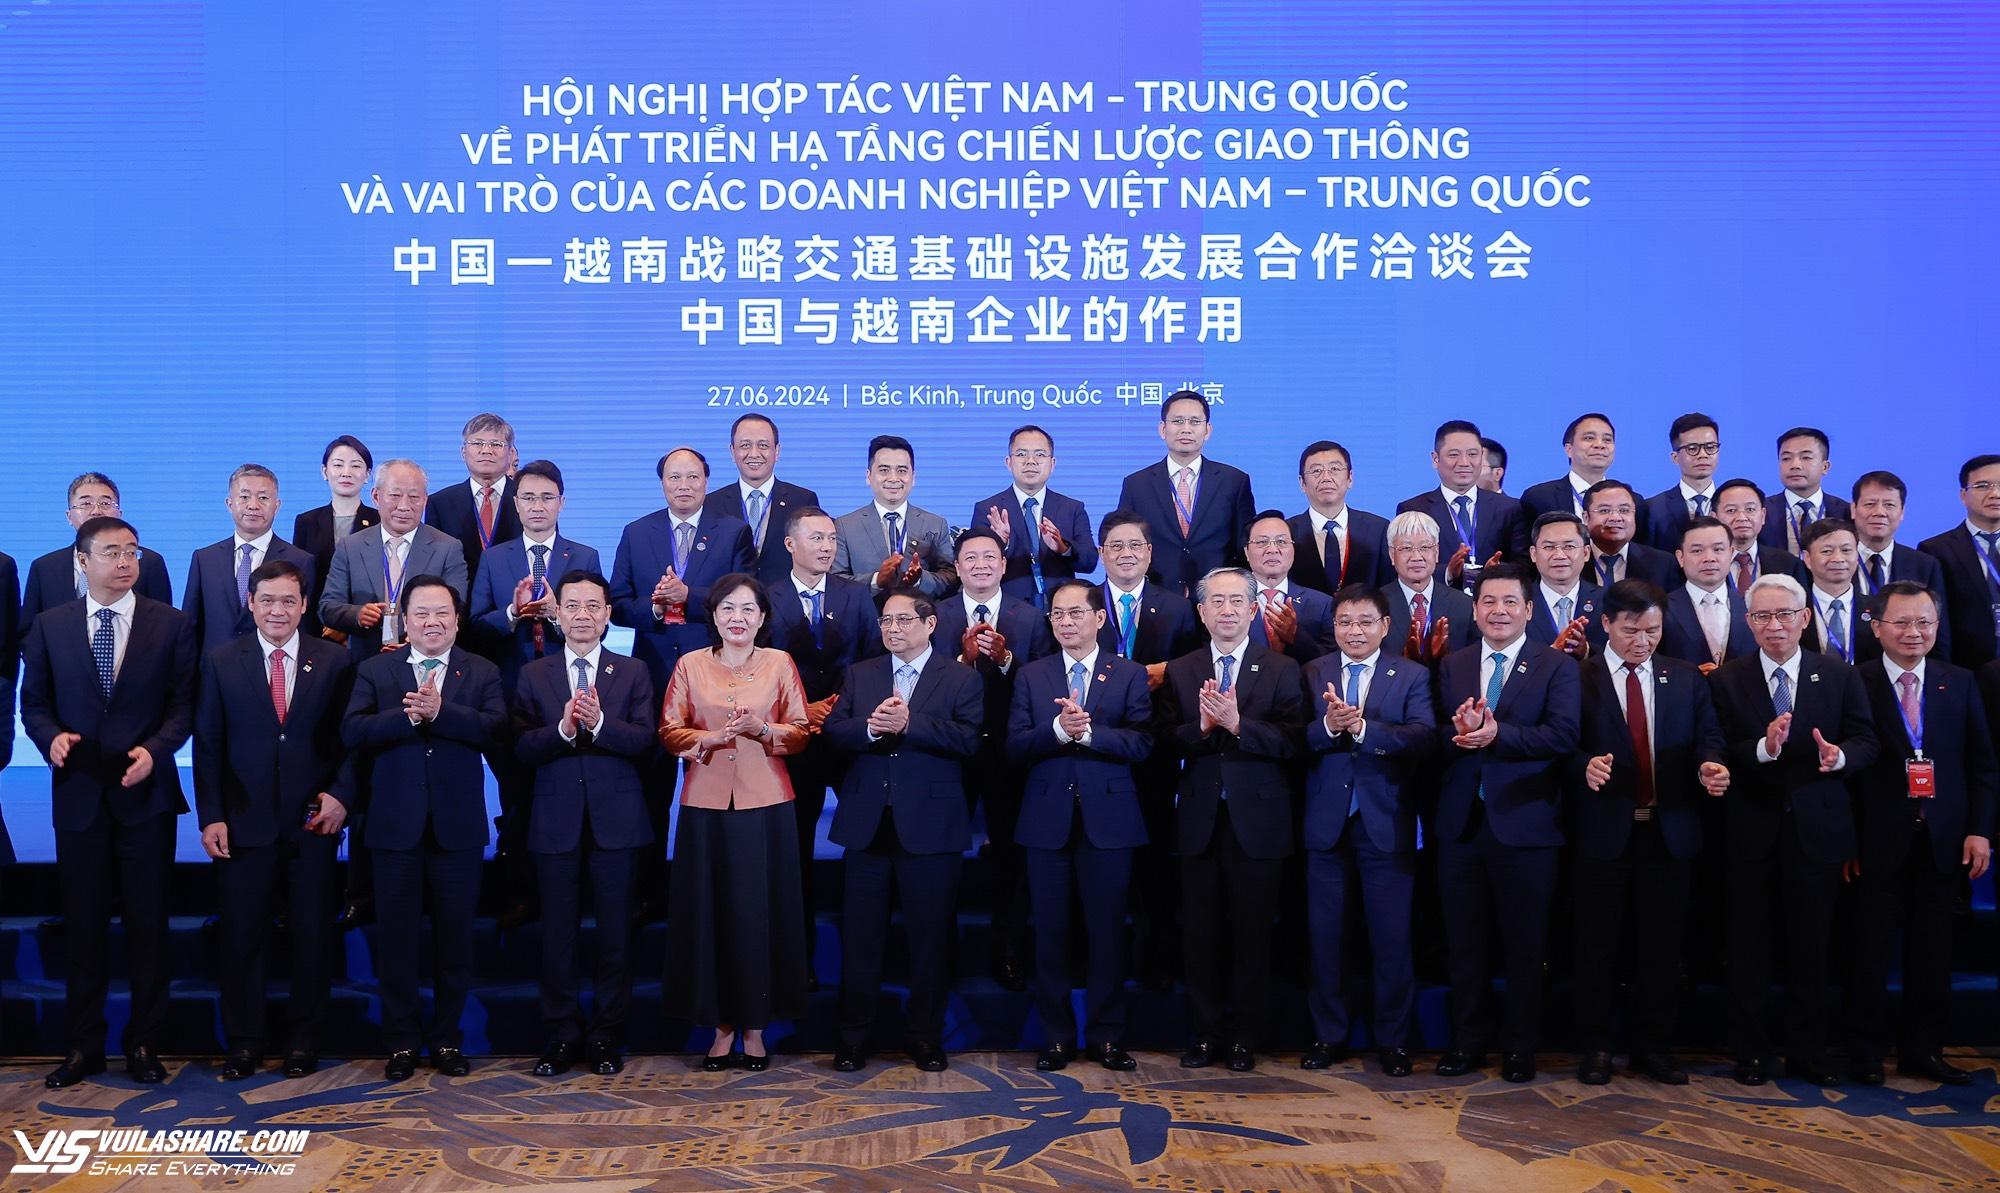 Nhiều sáng kiến hợp tác phát triển hạ tầng chiến lược giao thông Việt Nam - Trung Quốc- Ảnh 2.